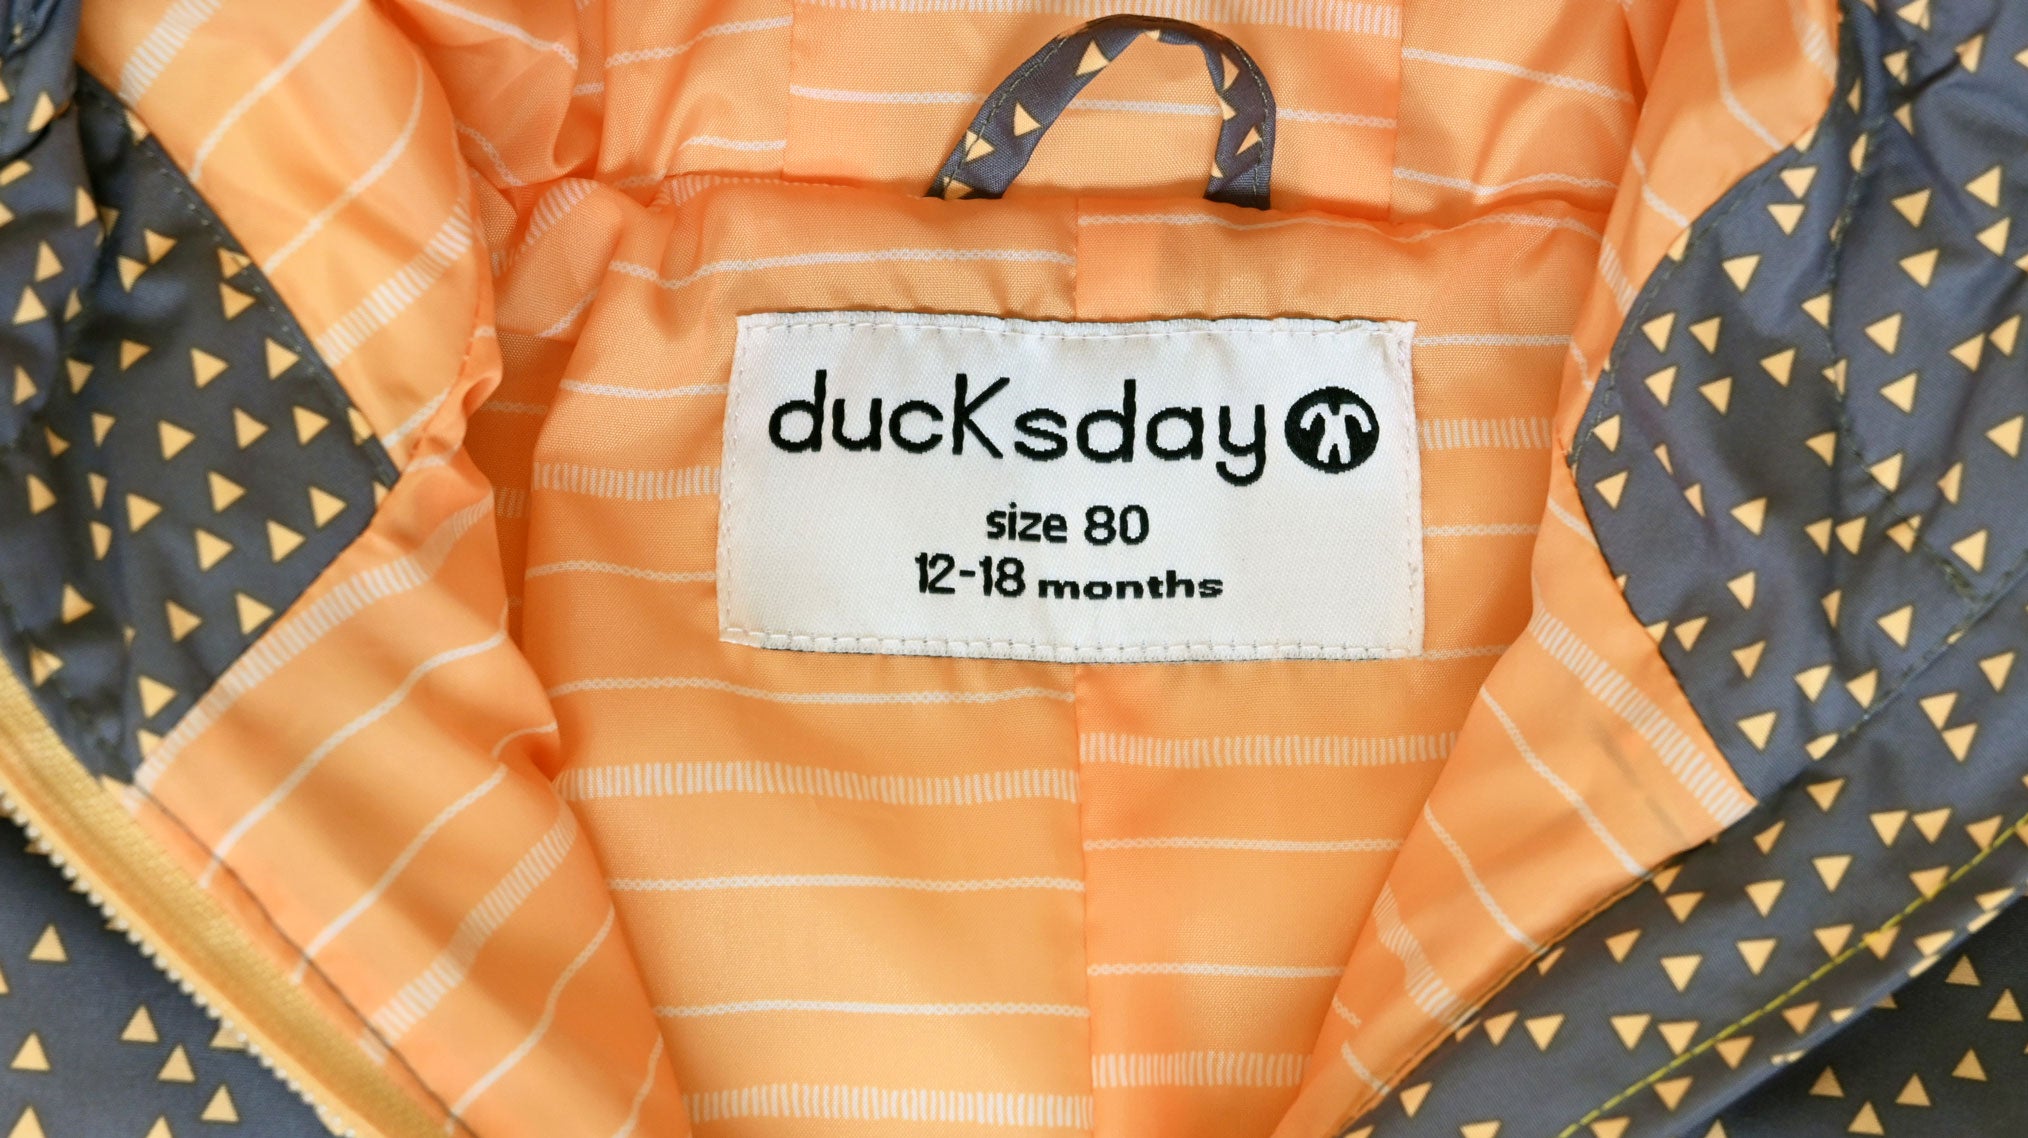 Ducksday celoroční oblek do deště